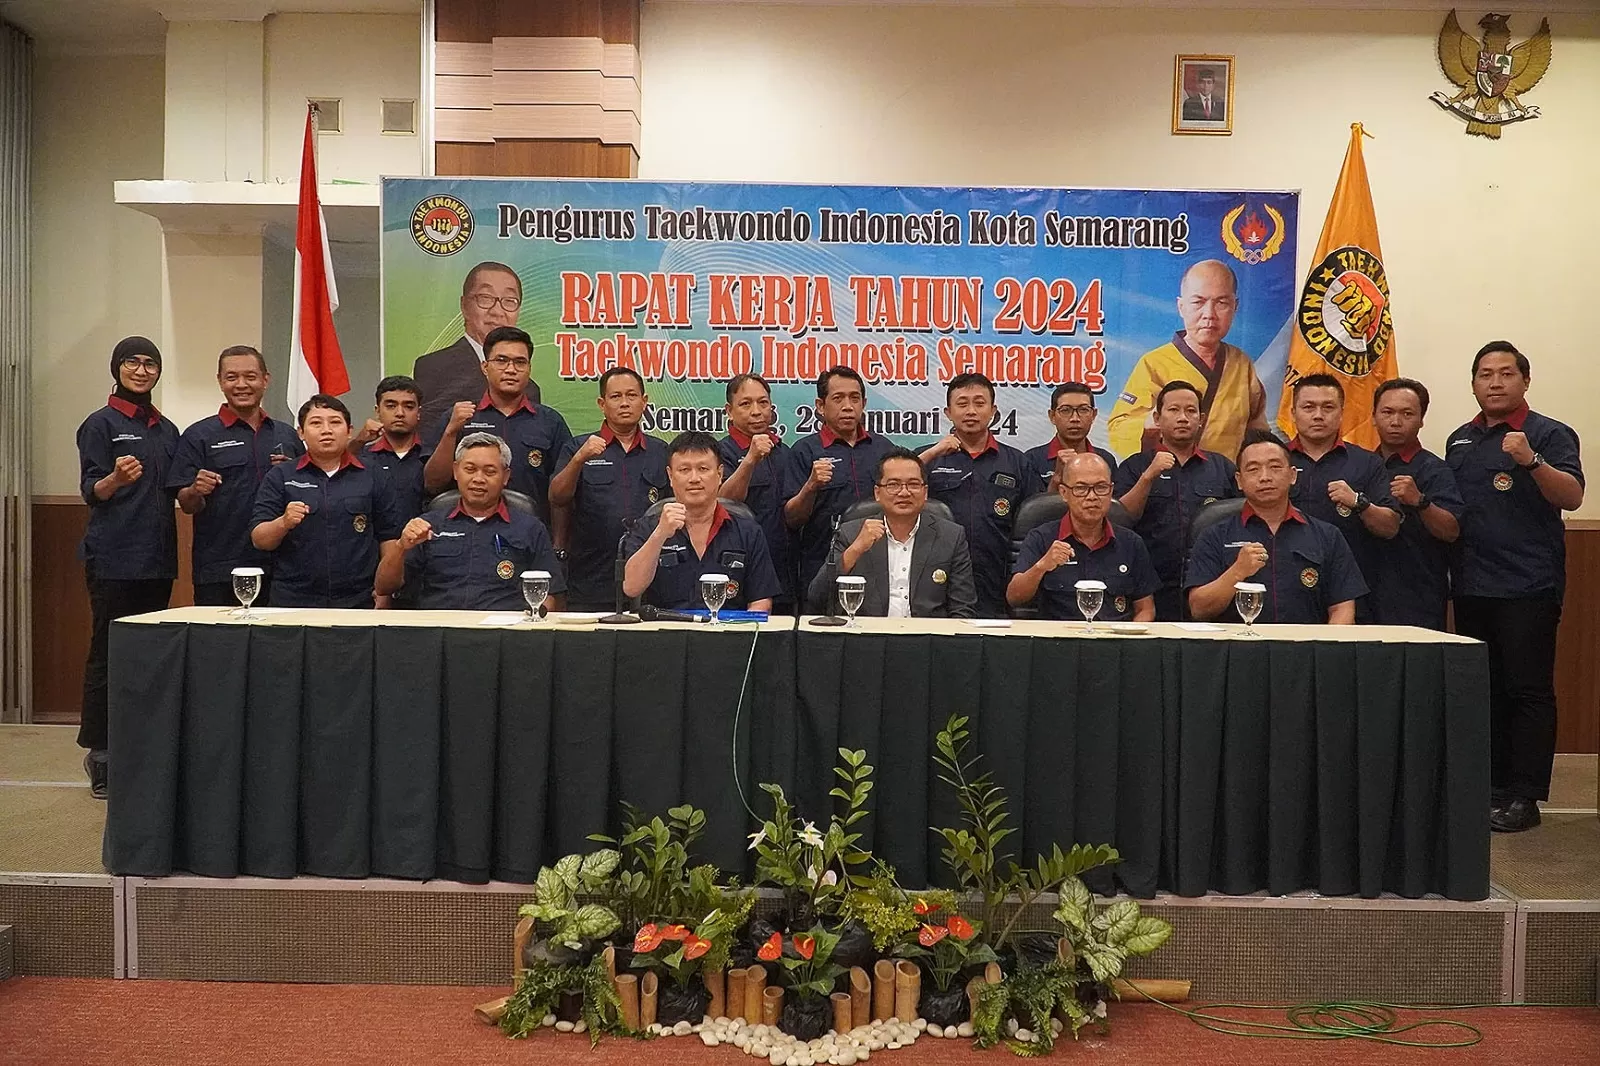 TI Kota Semarang Persiapan Awal Hadapi Porprov Jateng 2026, Tak Ingin Lagi di Bawah Taekwondo Solo dan Sukoharjo